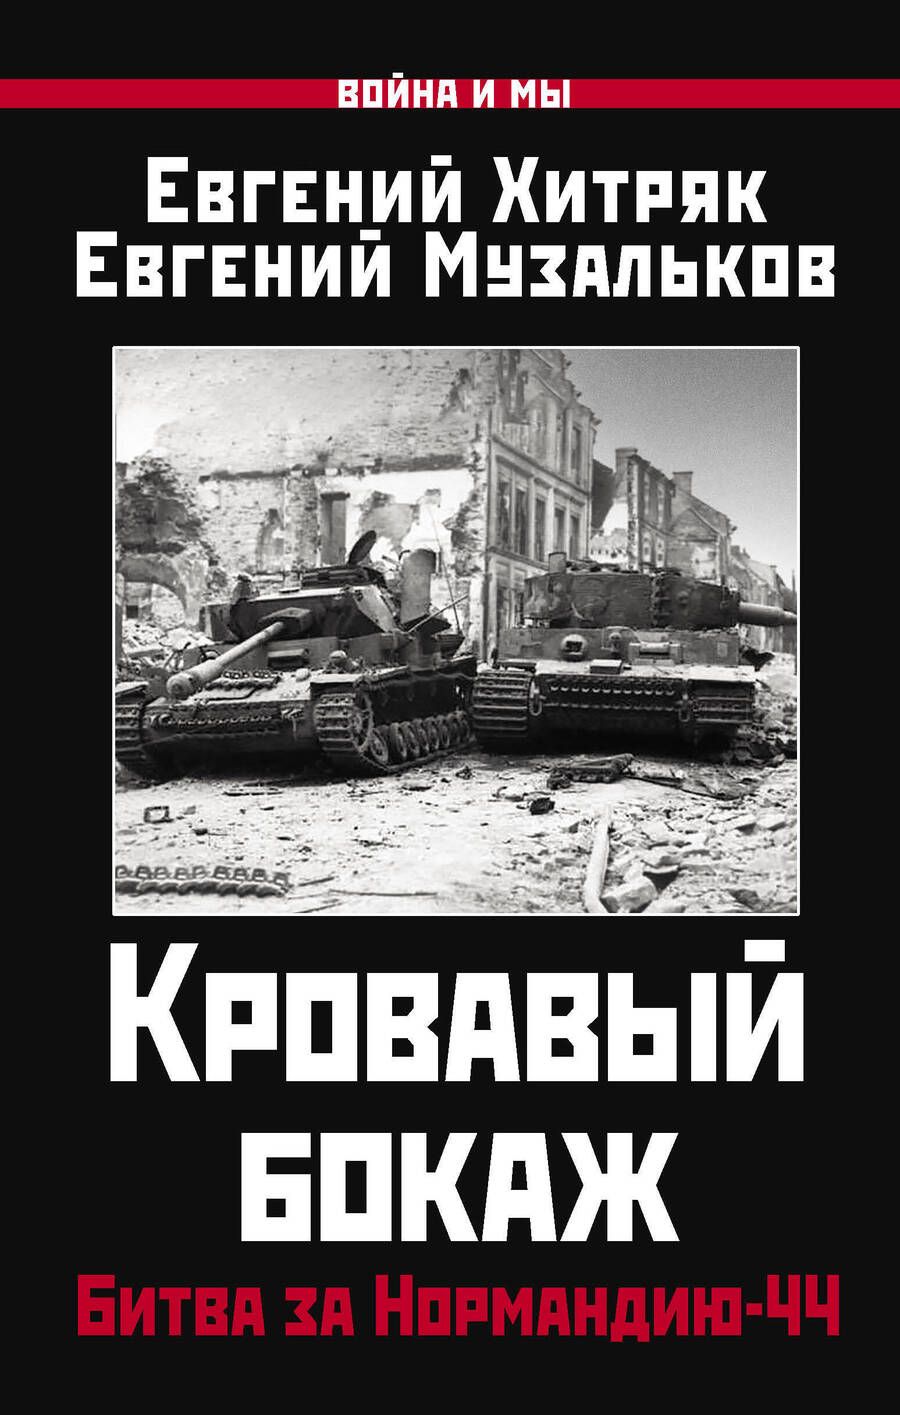 Обложка книги "Хитряк, Музальков: Кровавый бокаж. Битва за Нормандию-44"